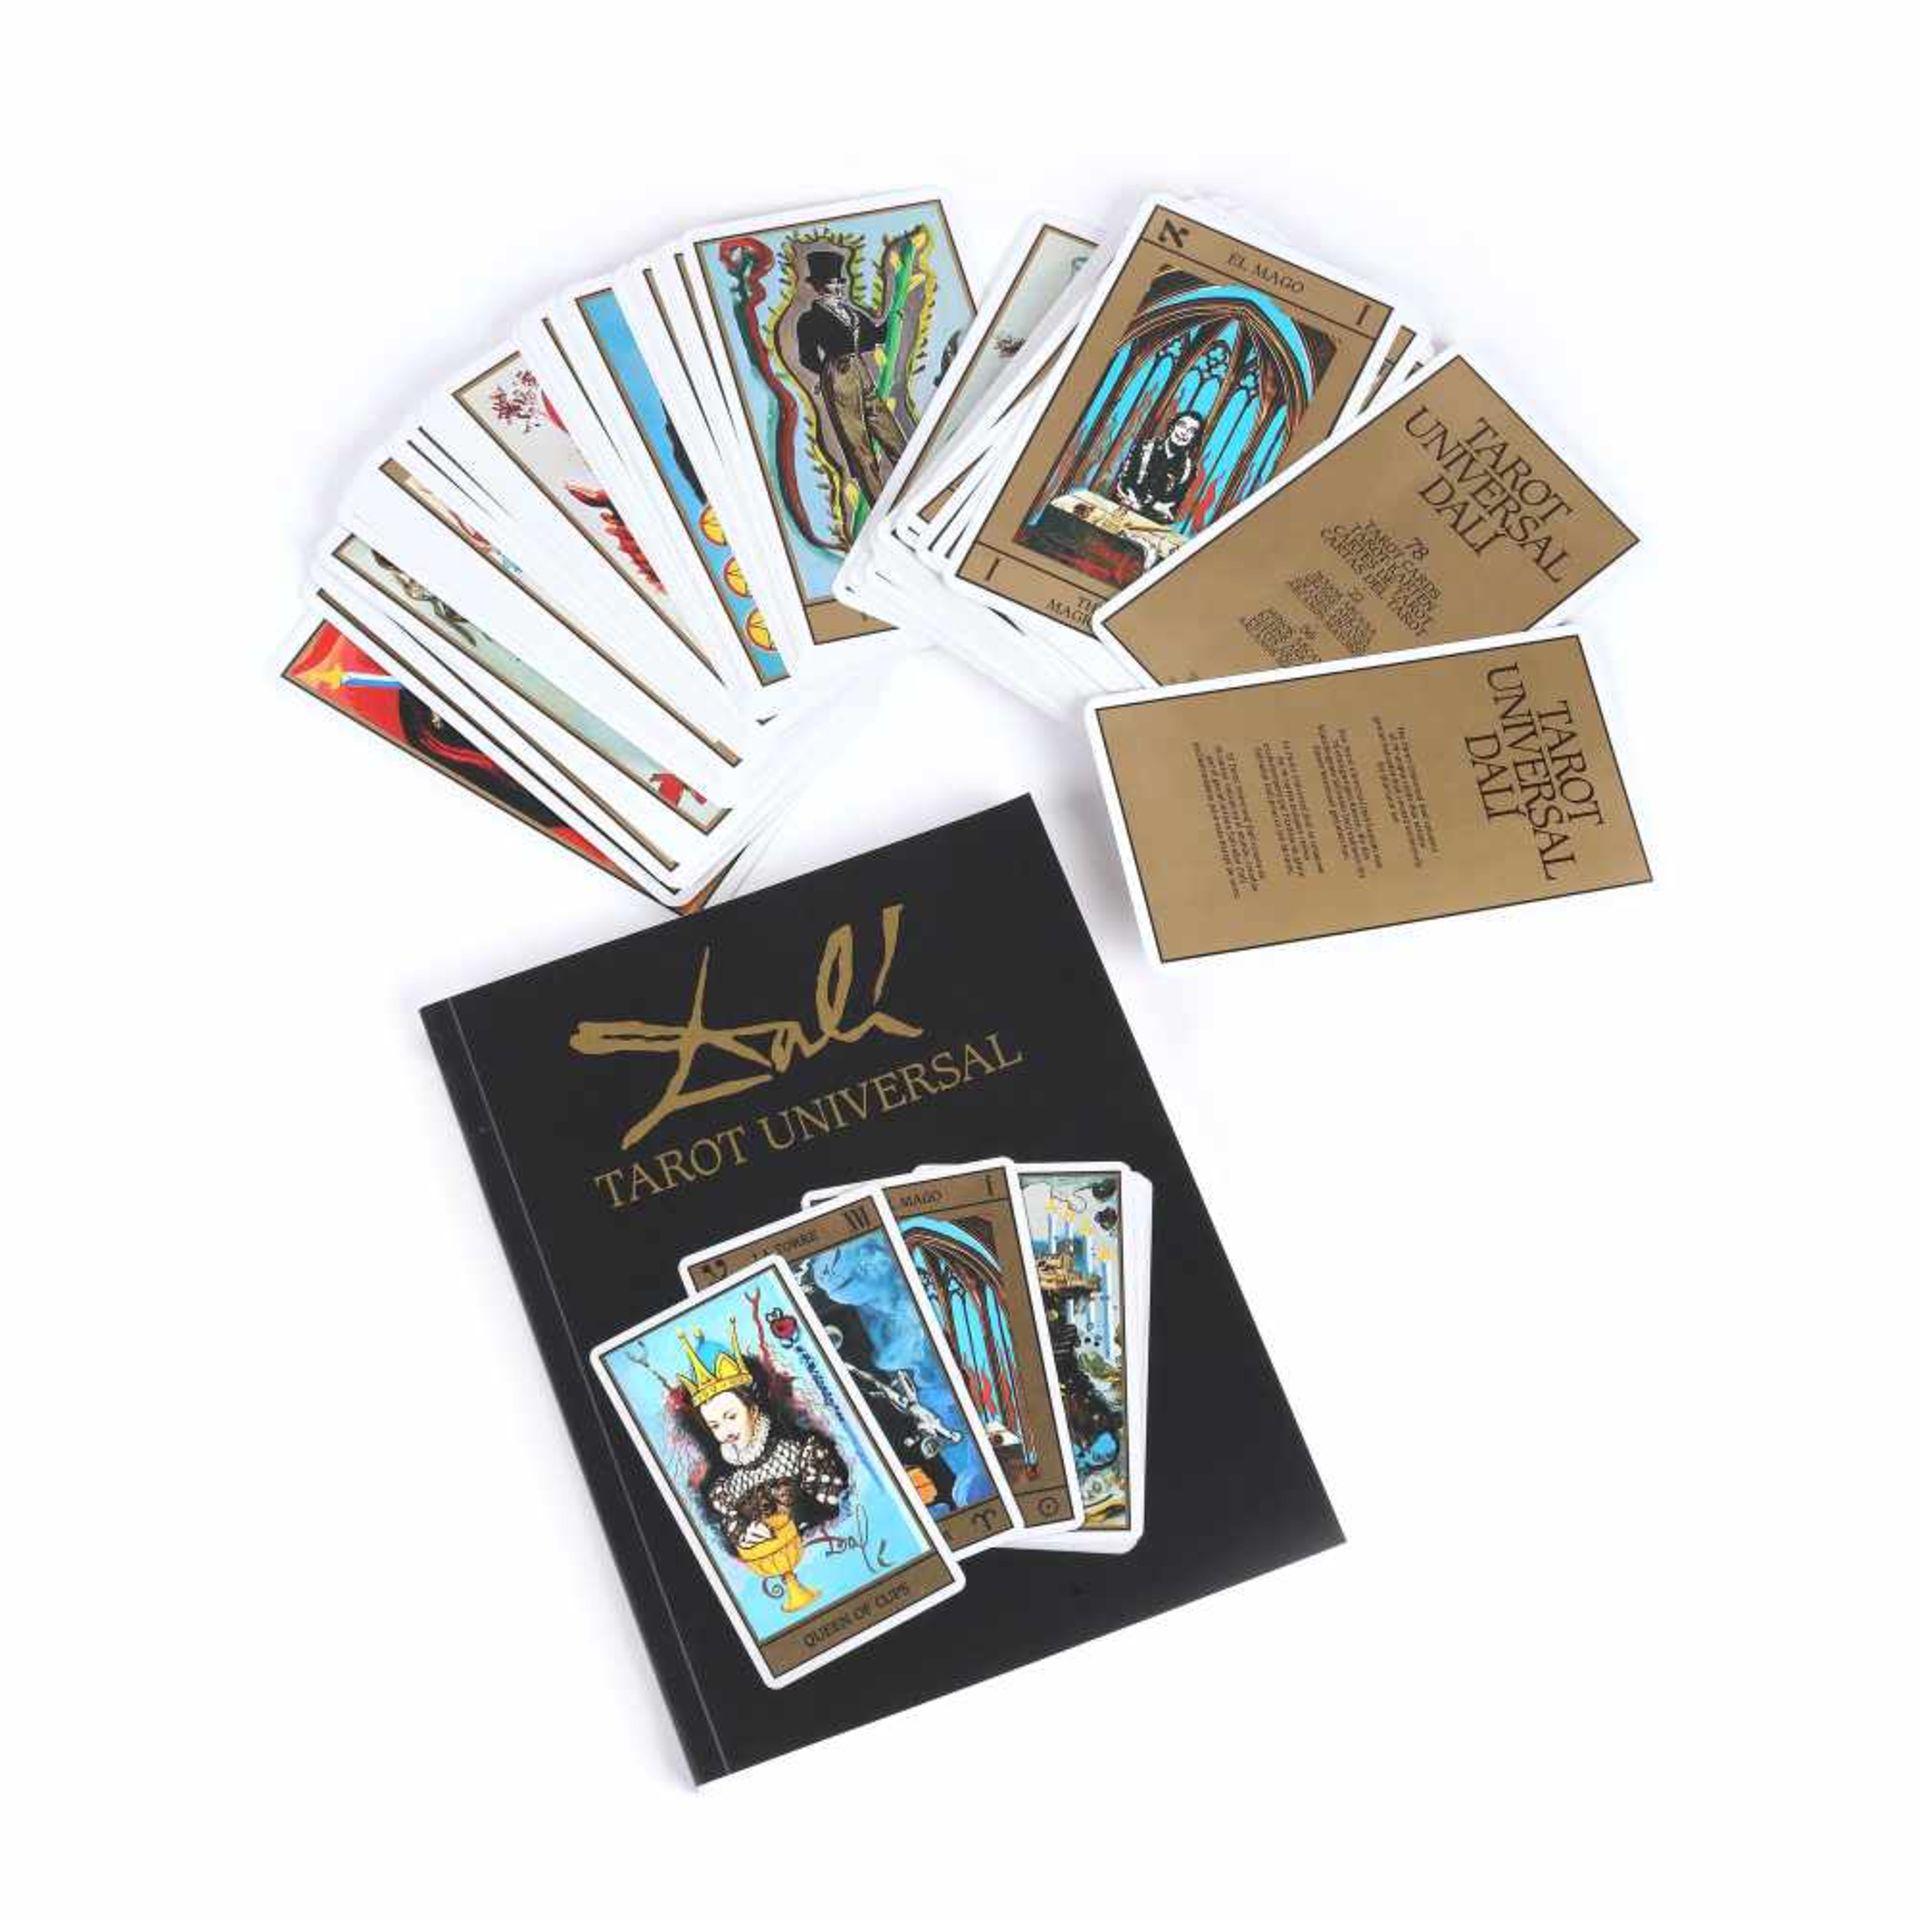 Tarot card set, ”Tarot Universal”, contains 78 Arcana illustrated by Salvador Dali, the second h - Bild 2 aus 5